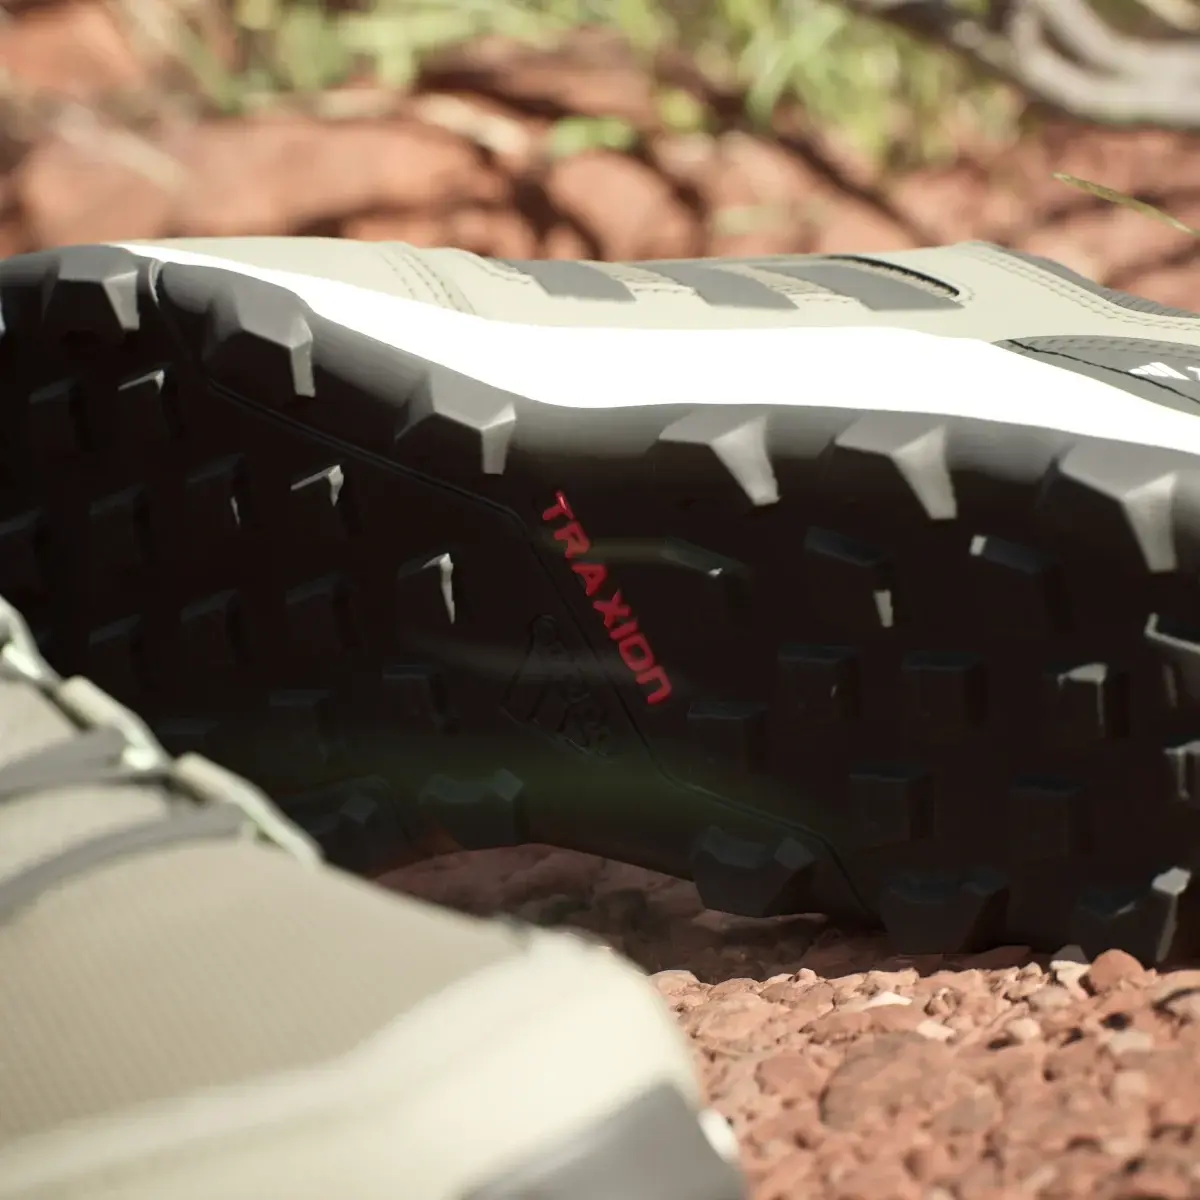 Adidas Tracerocker 2.0 Trailrunning-Schuh. 2